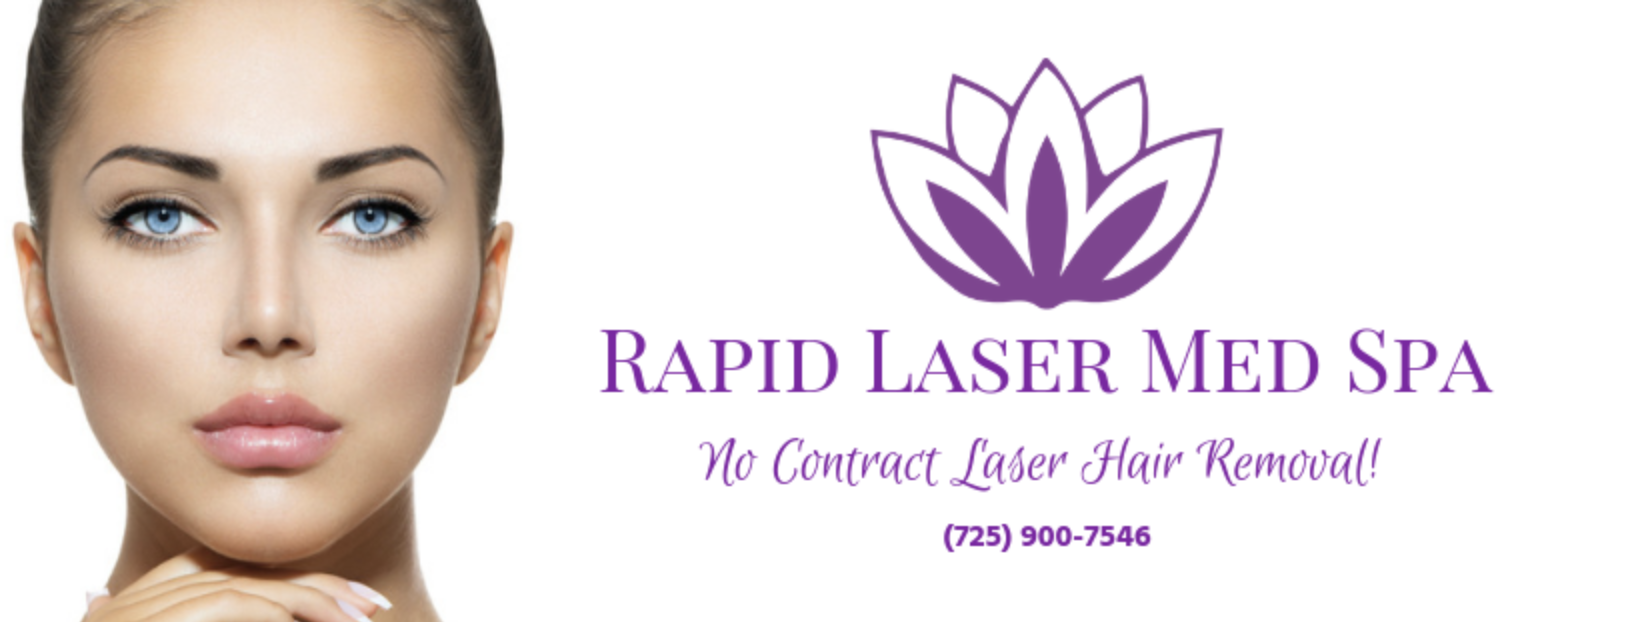 Rapid Laser Med Spa